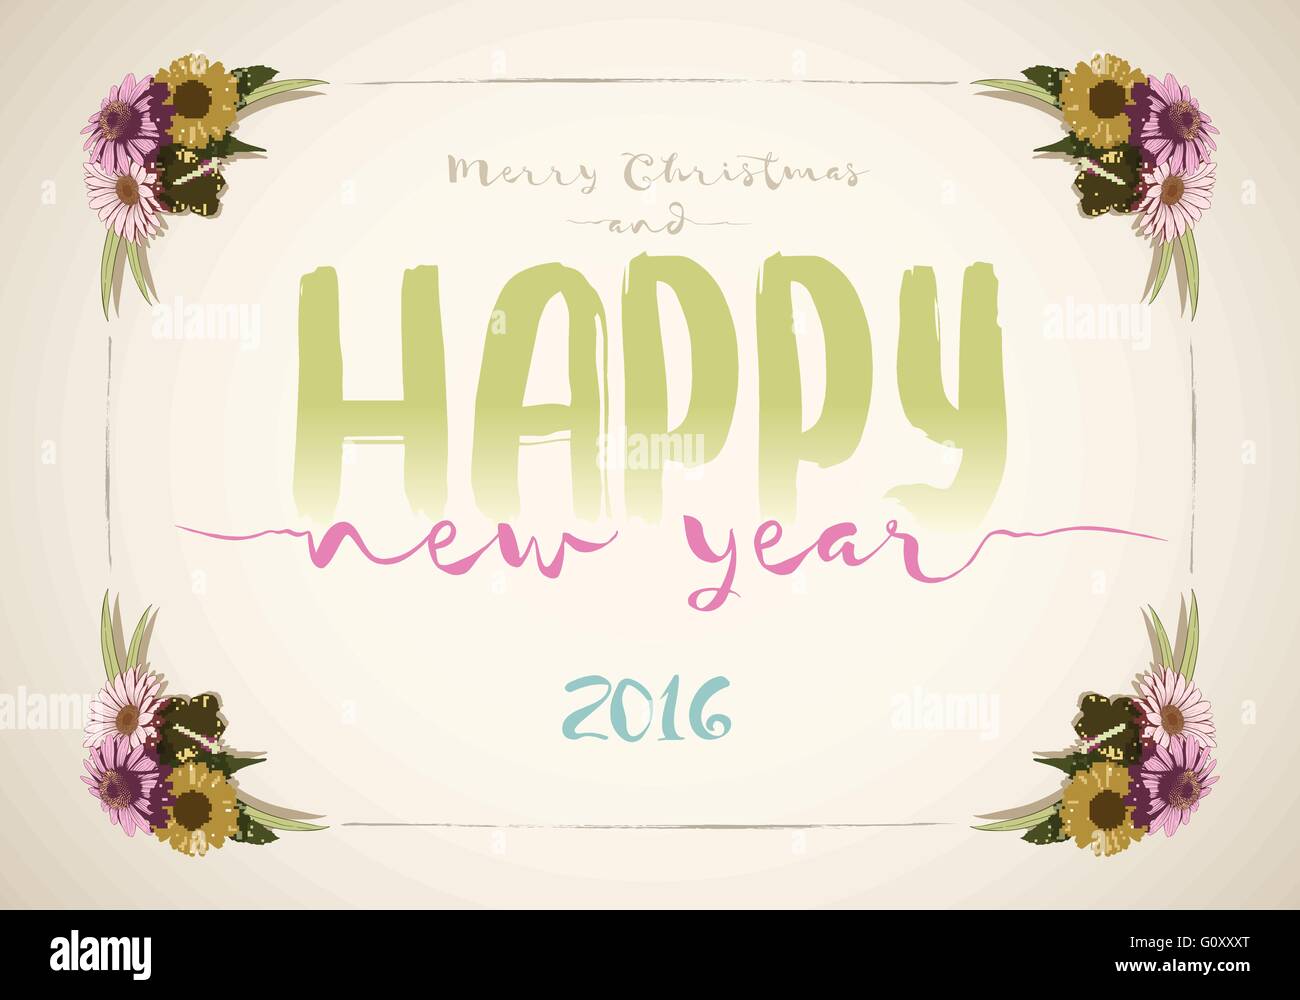 Natale e felice anno nuovo messaggio board con colorati vintage disegnati a mano fiori. Illustrazione Vettoriale